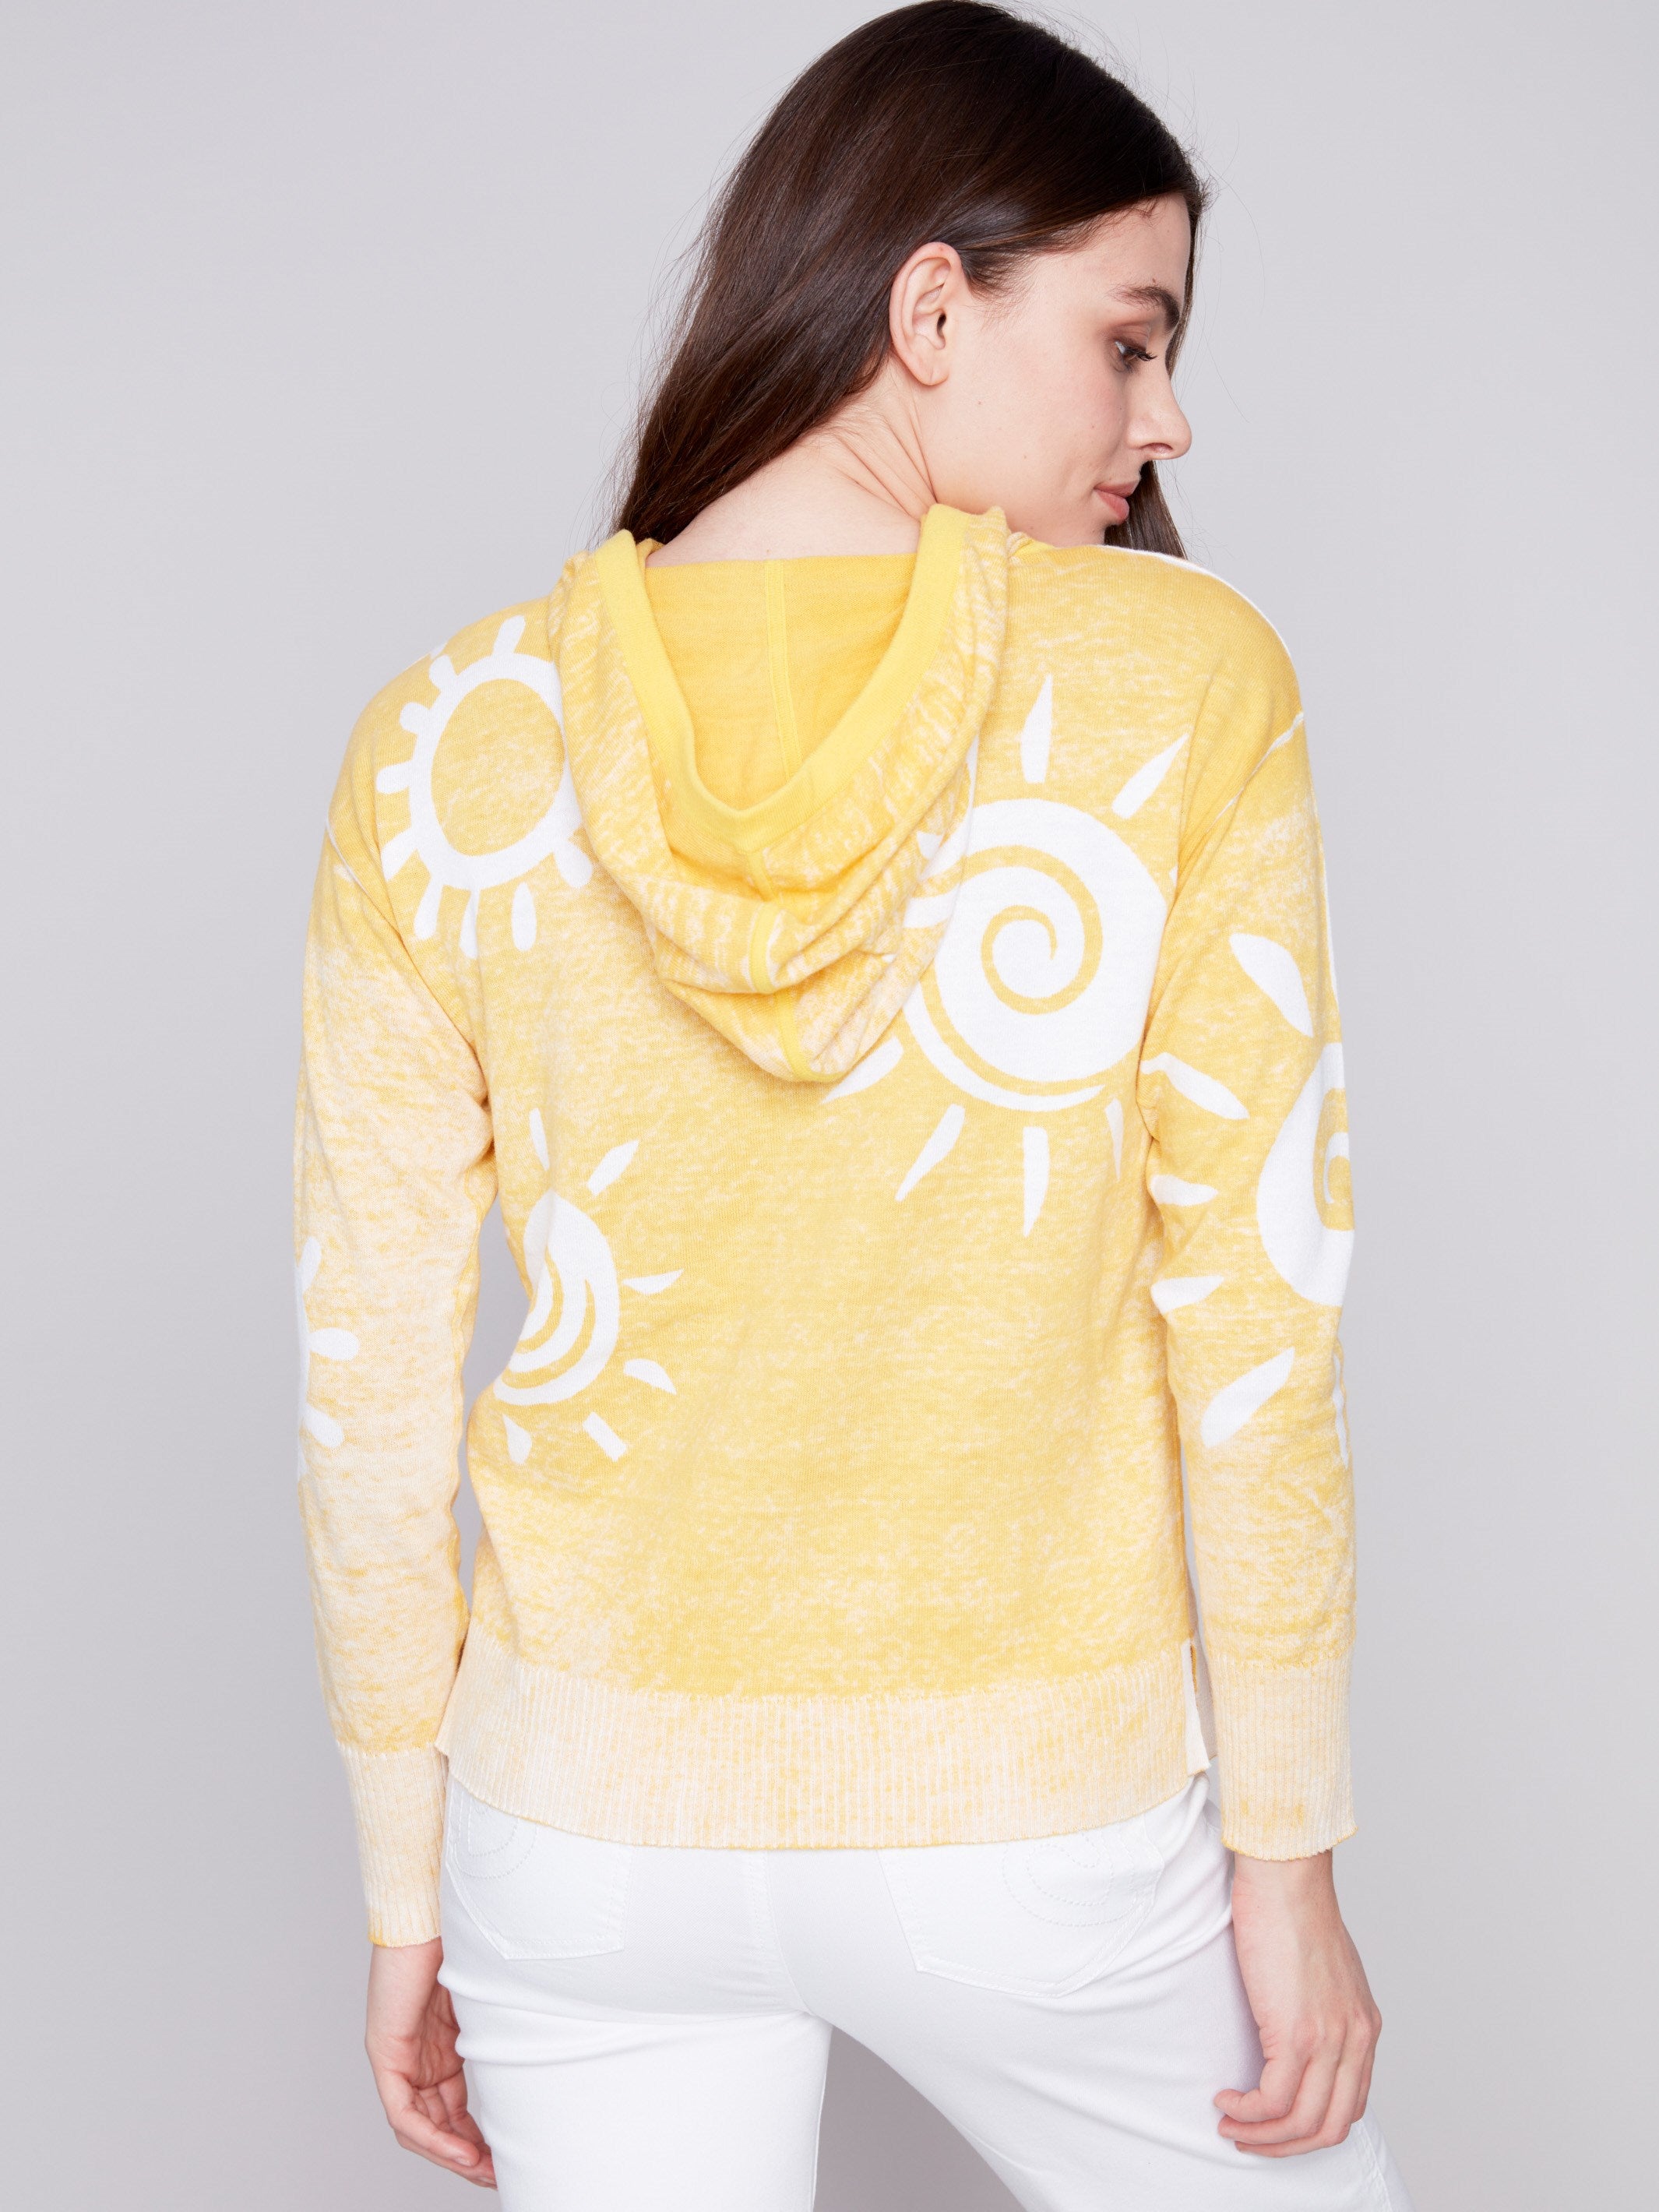 Charlie B Reverse Printed Hoodie Sweater - Corn - Image 6